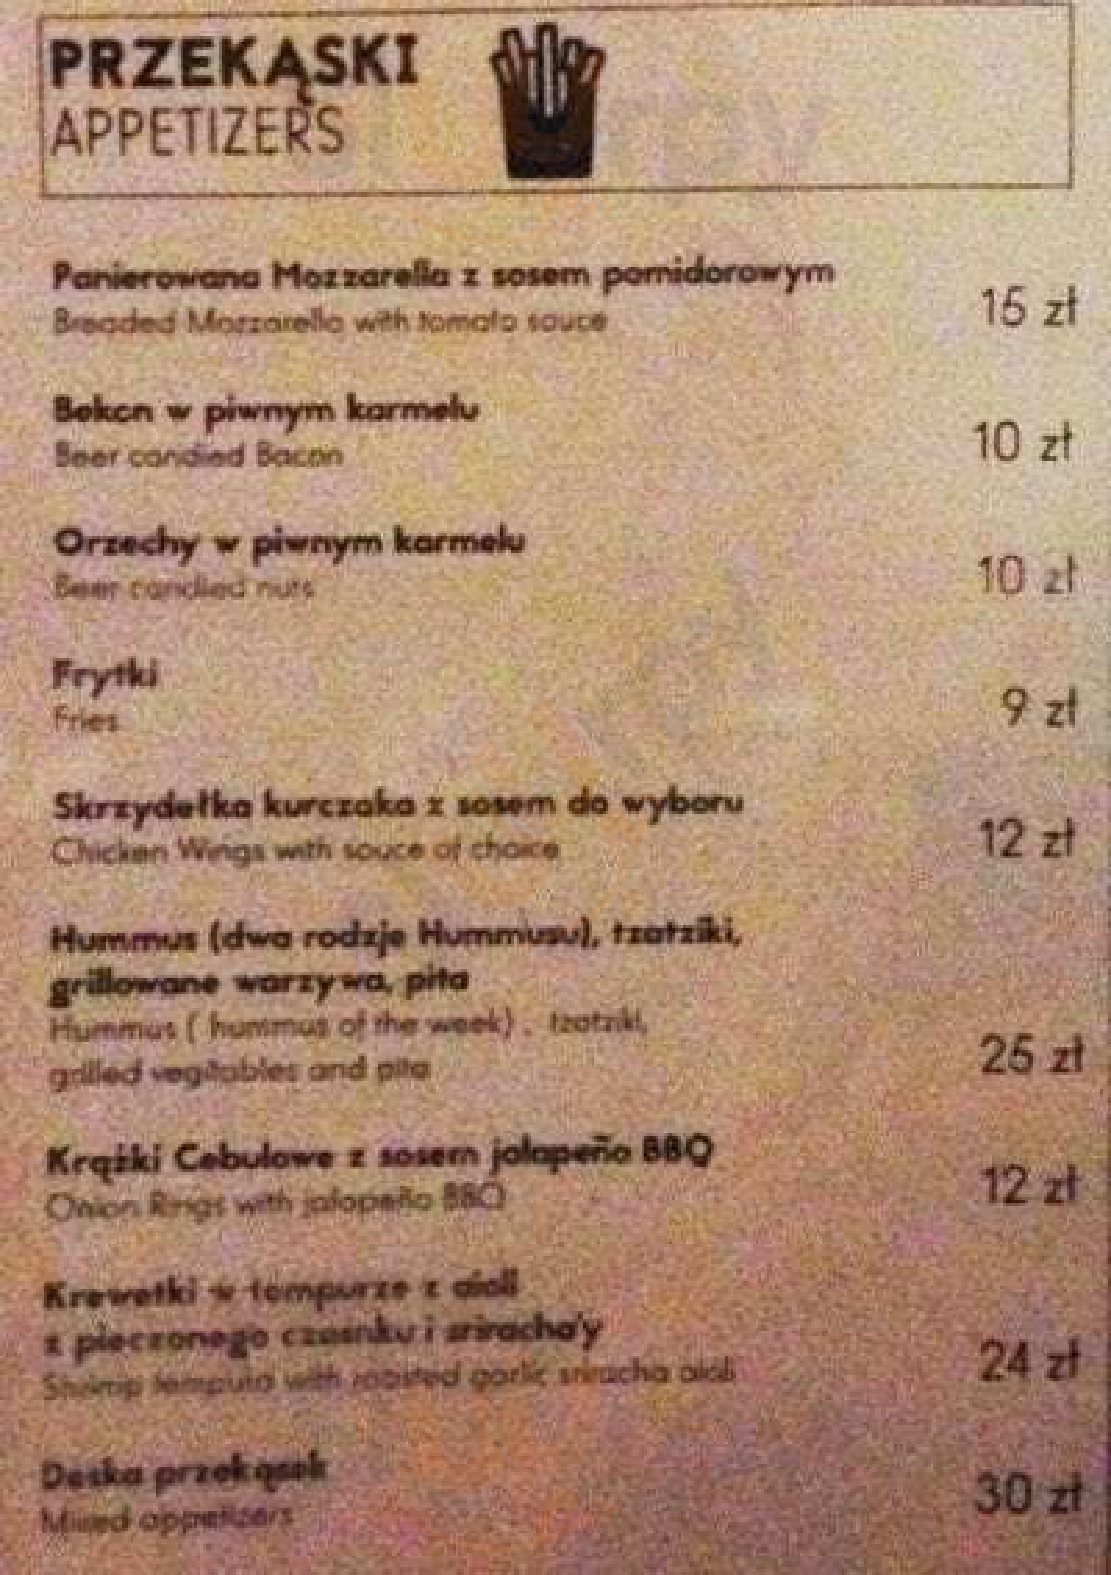 Hoppiness Beer & Food Warszawa Menu - 1